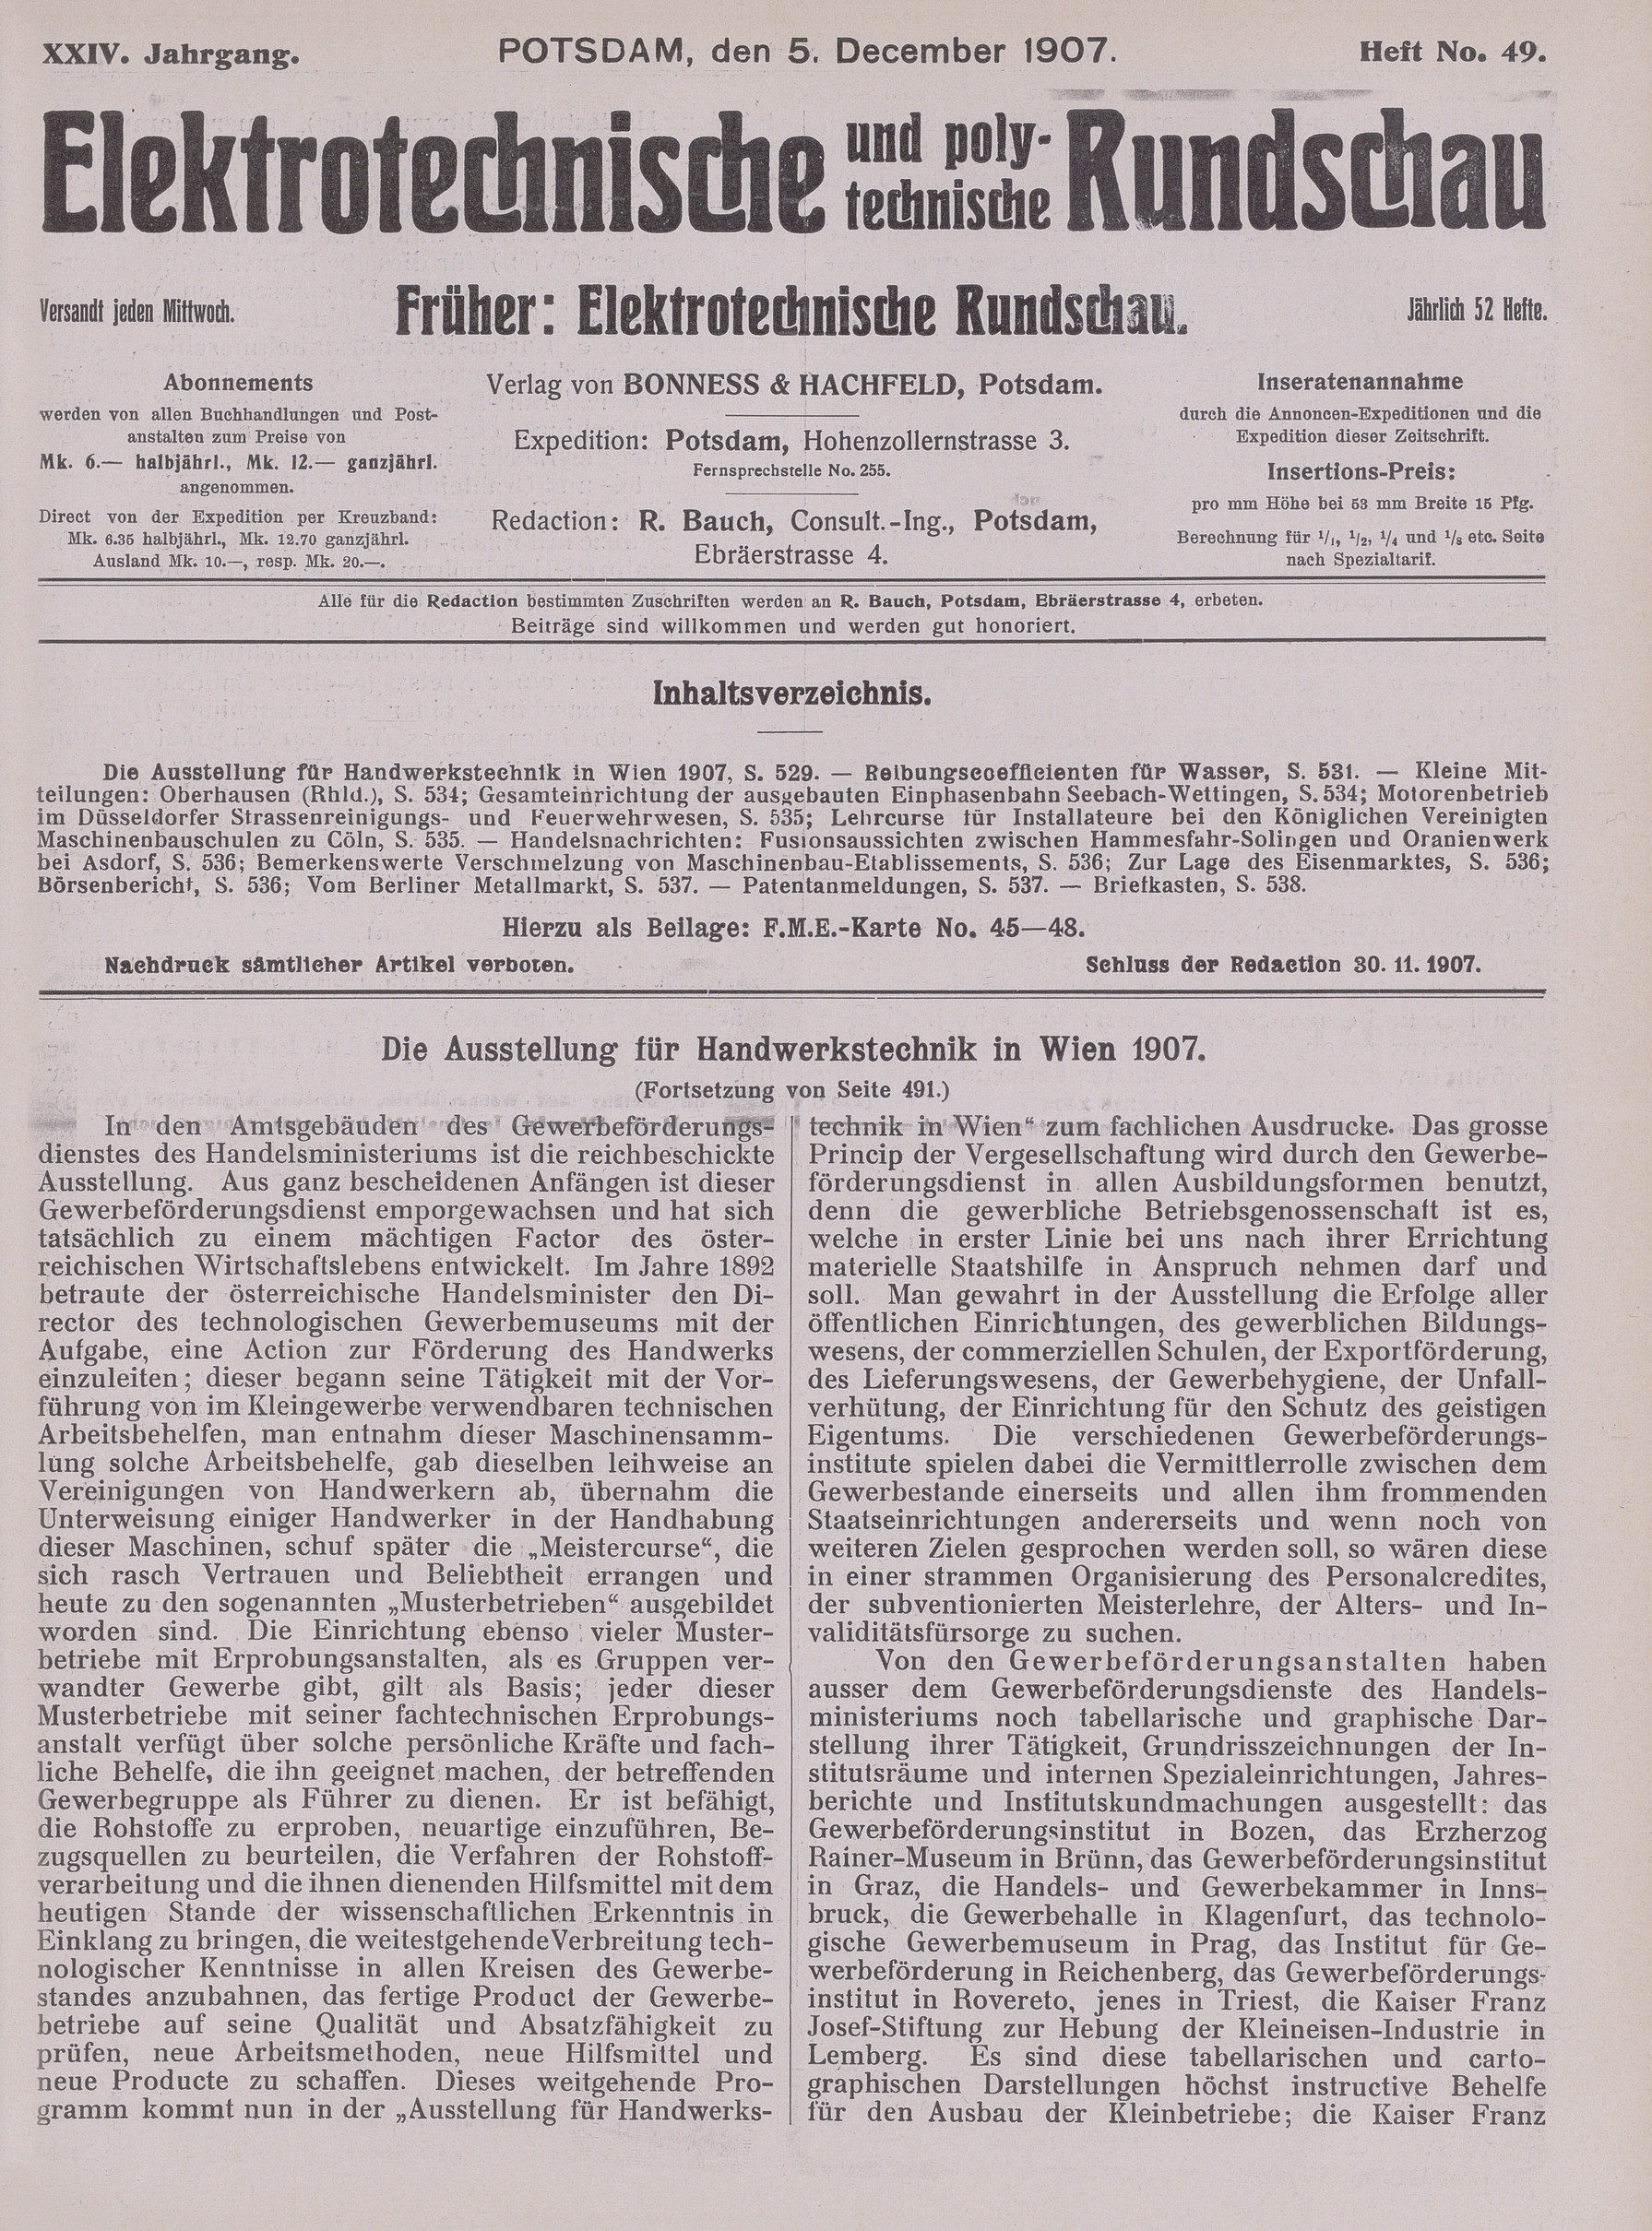 Elektrotechnische und polytechnische Rundschau, XXIV. Jahrgang, Heft No. 49